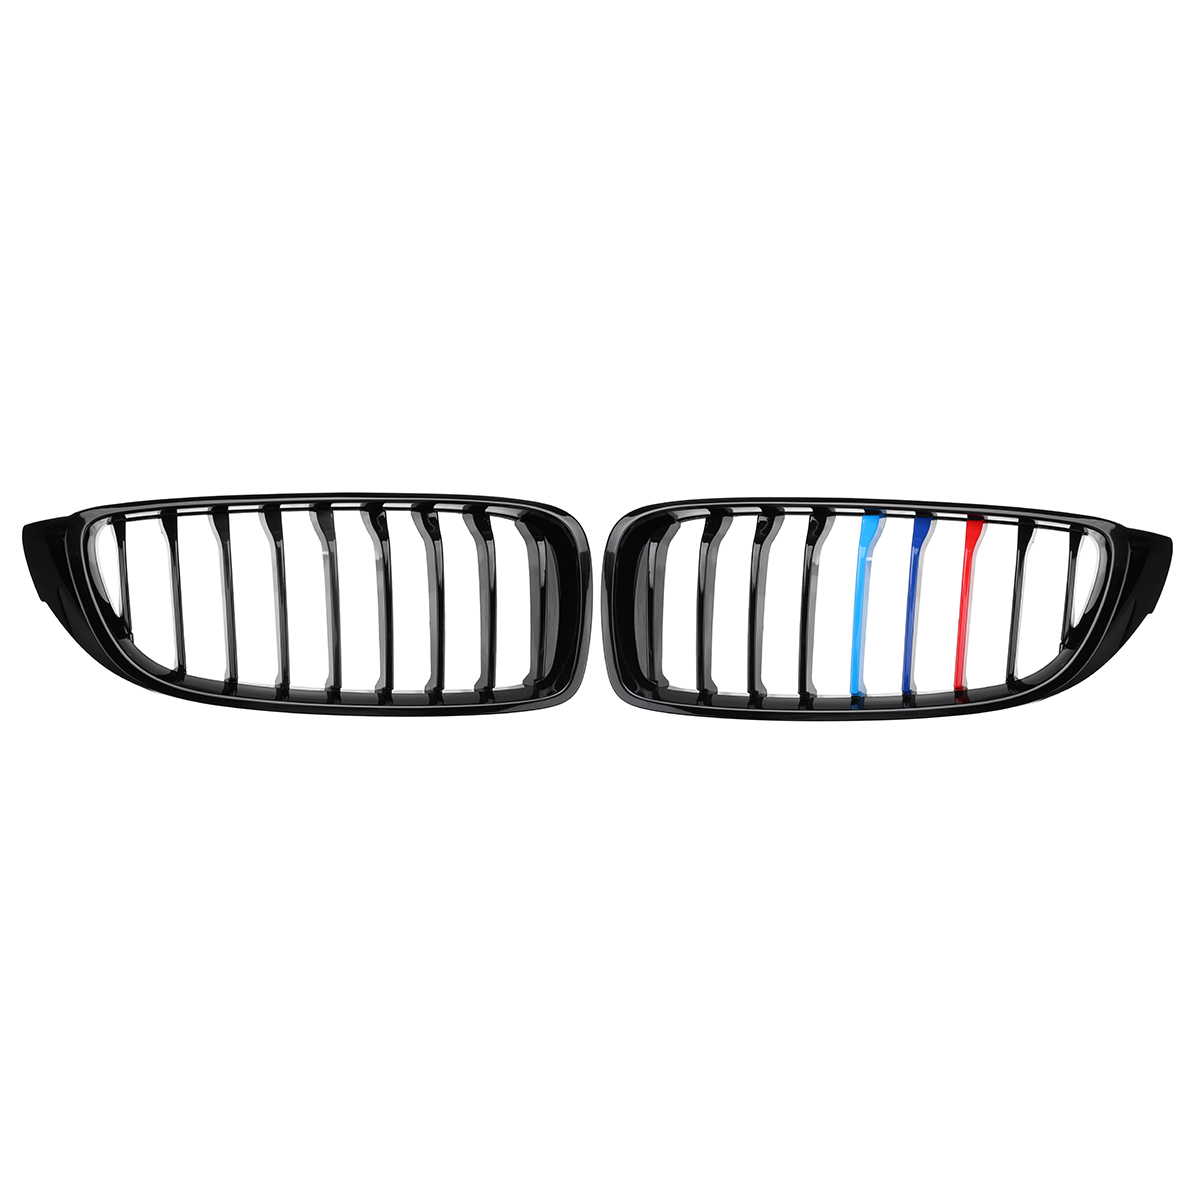 

Авто Пара Глянцевый черный Передние решетки M цветная полоска для BMW 4 серии F32 F33 F36 F82